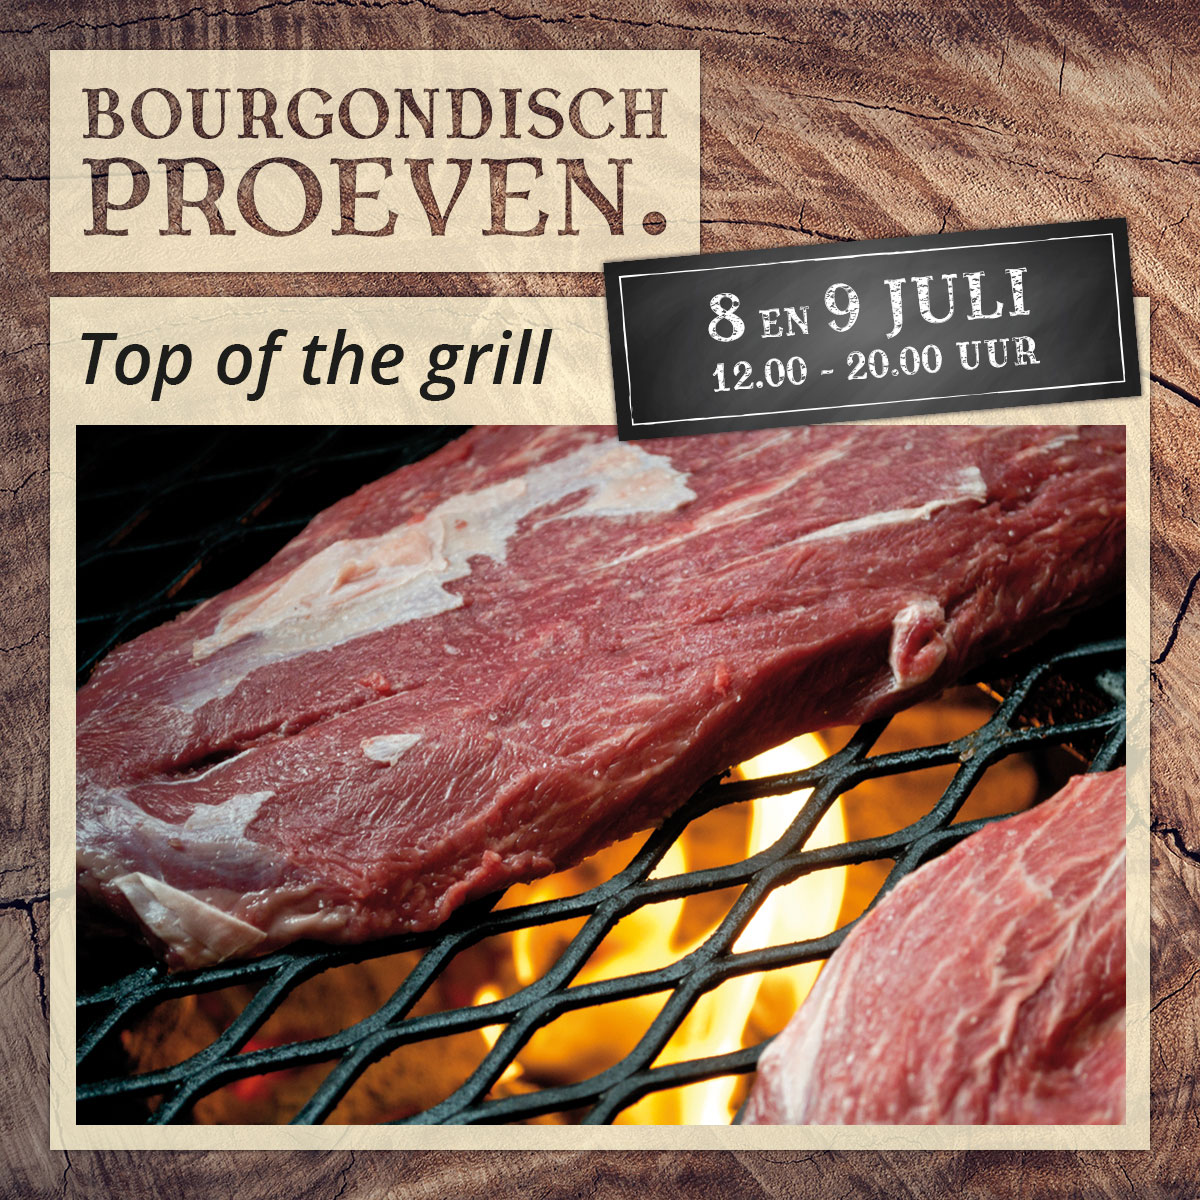 De Bourgondiër – Bourgondisch Proeven. – Facebookbericht – Top-of-the-grill